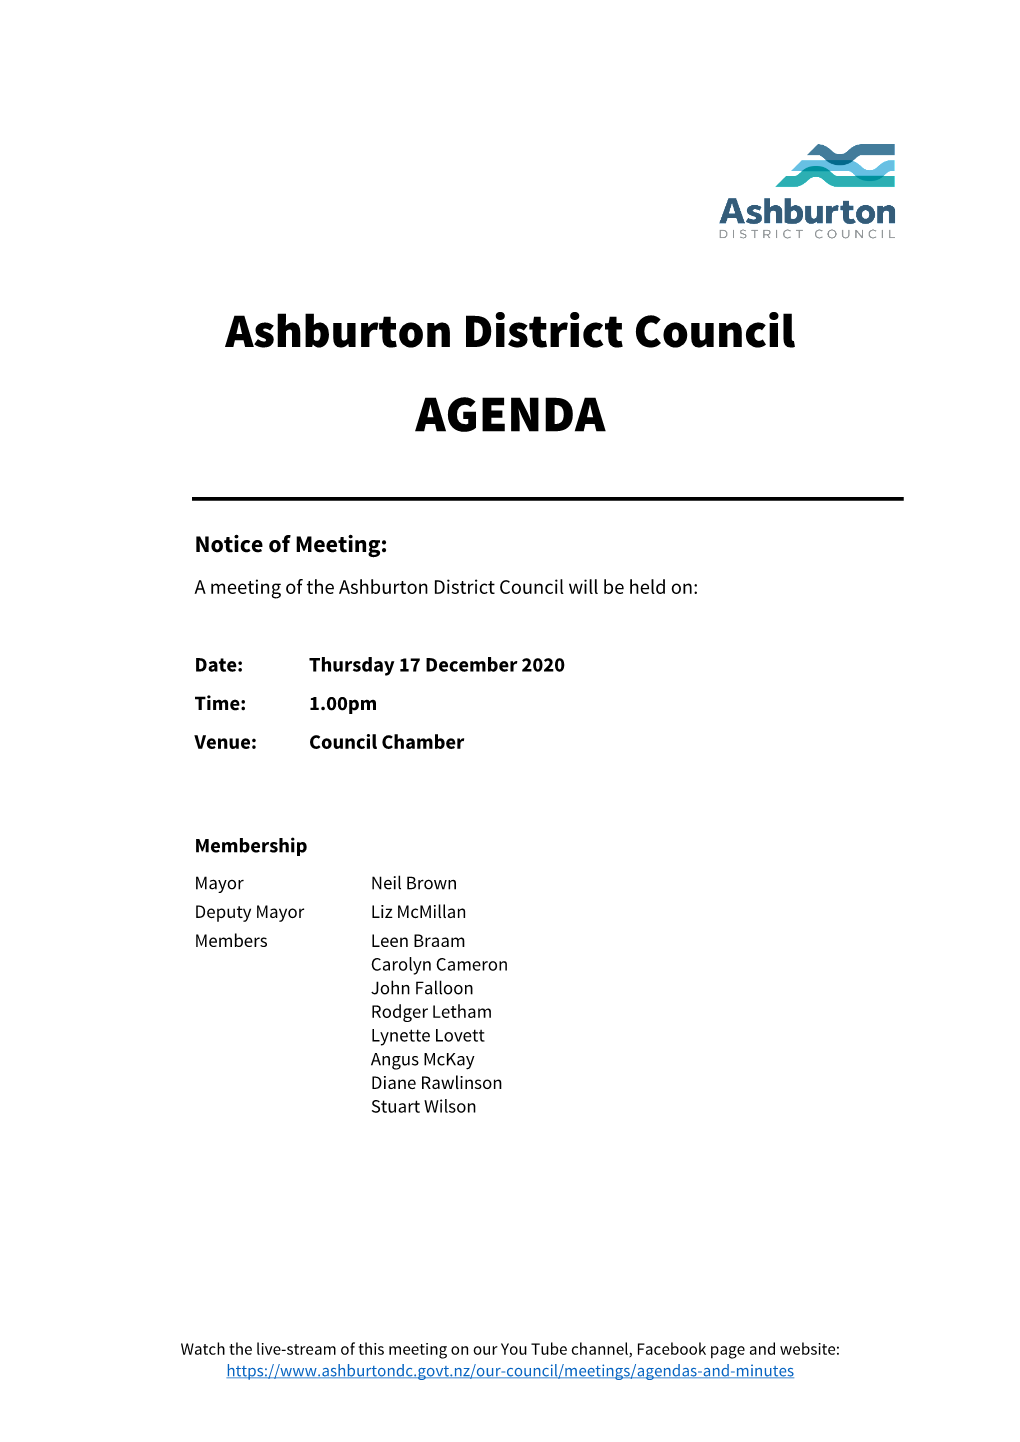 Council Agenda 17 December 2020